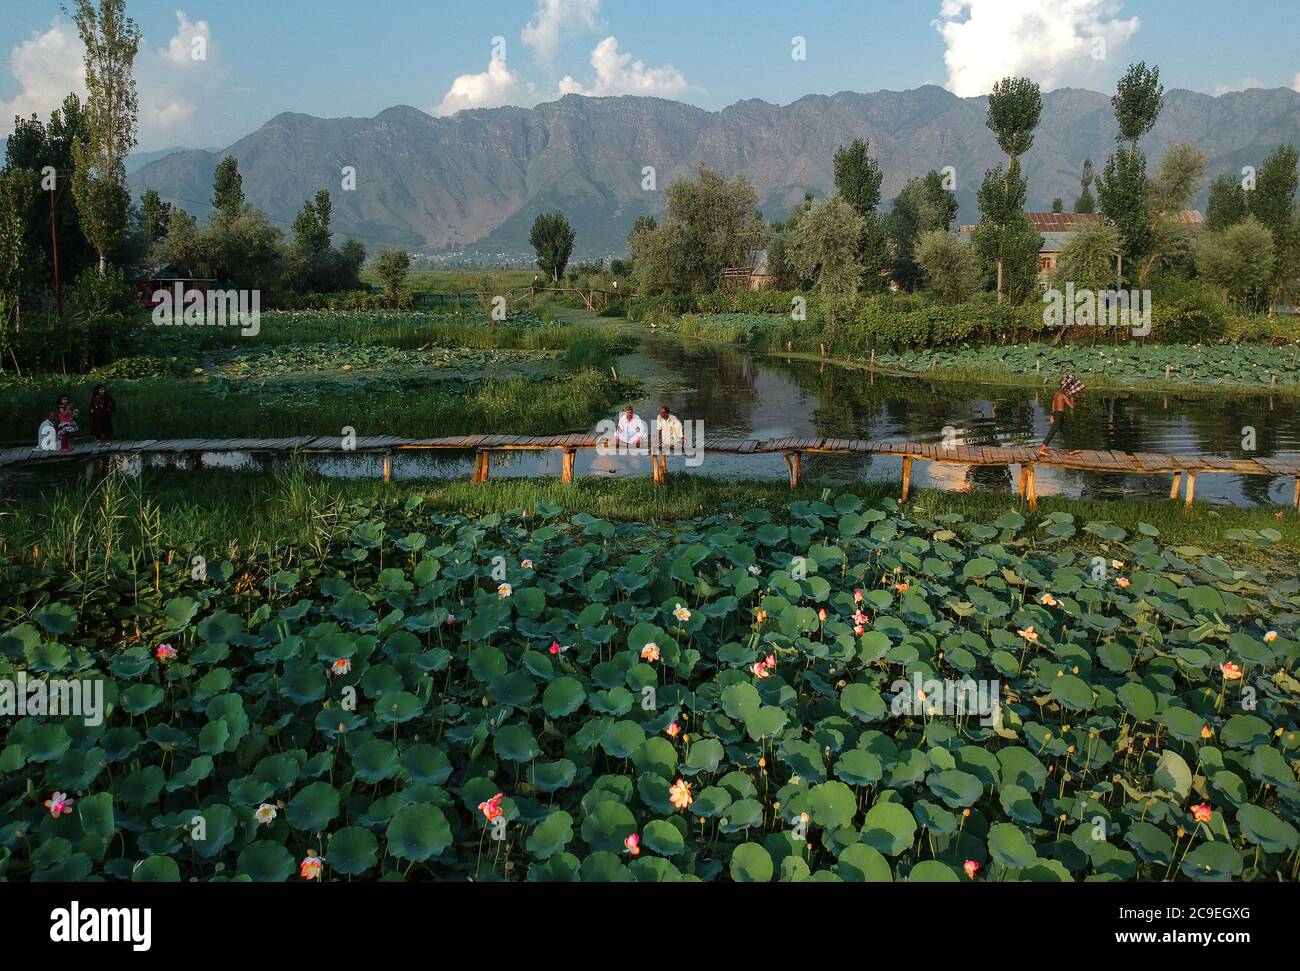 Srinagar, indisch kontrolliertes Kaschmir. Juli 2020. Die Menschen verbringen Zeit auf einer Fußgängerbrücke in einem Lotusteich am Dal Lake in der Stadt Srinagar, der Sommerhauptstadt des von Indien kontrollierten Kaschmir, 30. Juli 2020. Quelle: Javed Dar/Xinhua/Alamy Live News Stockfoto